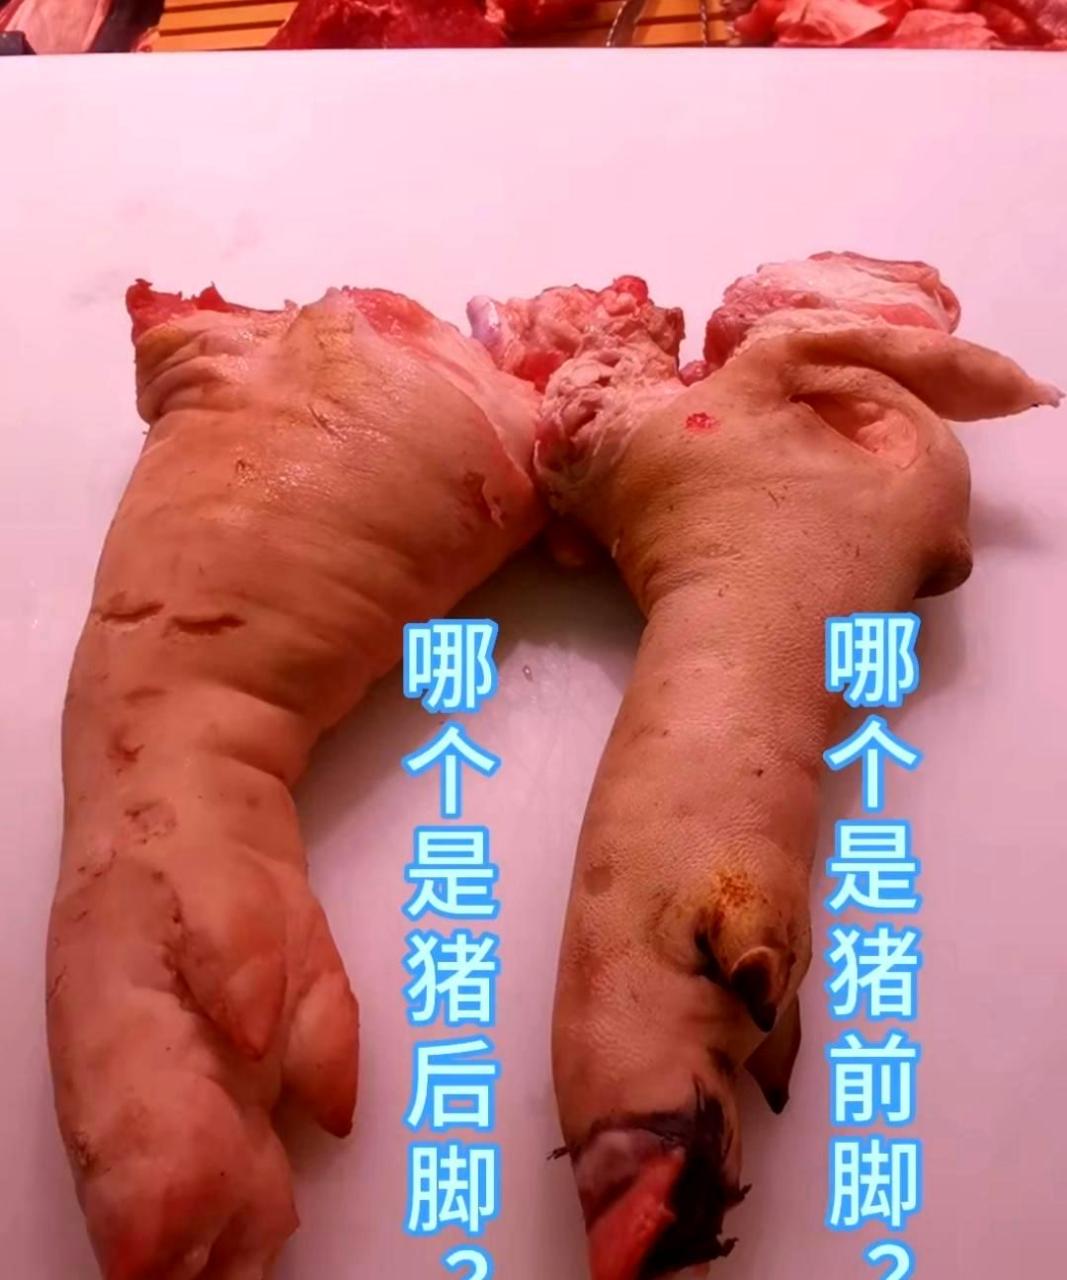 猪的前爪和后爪的图片图片